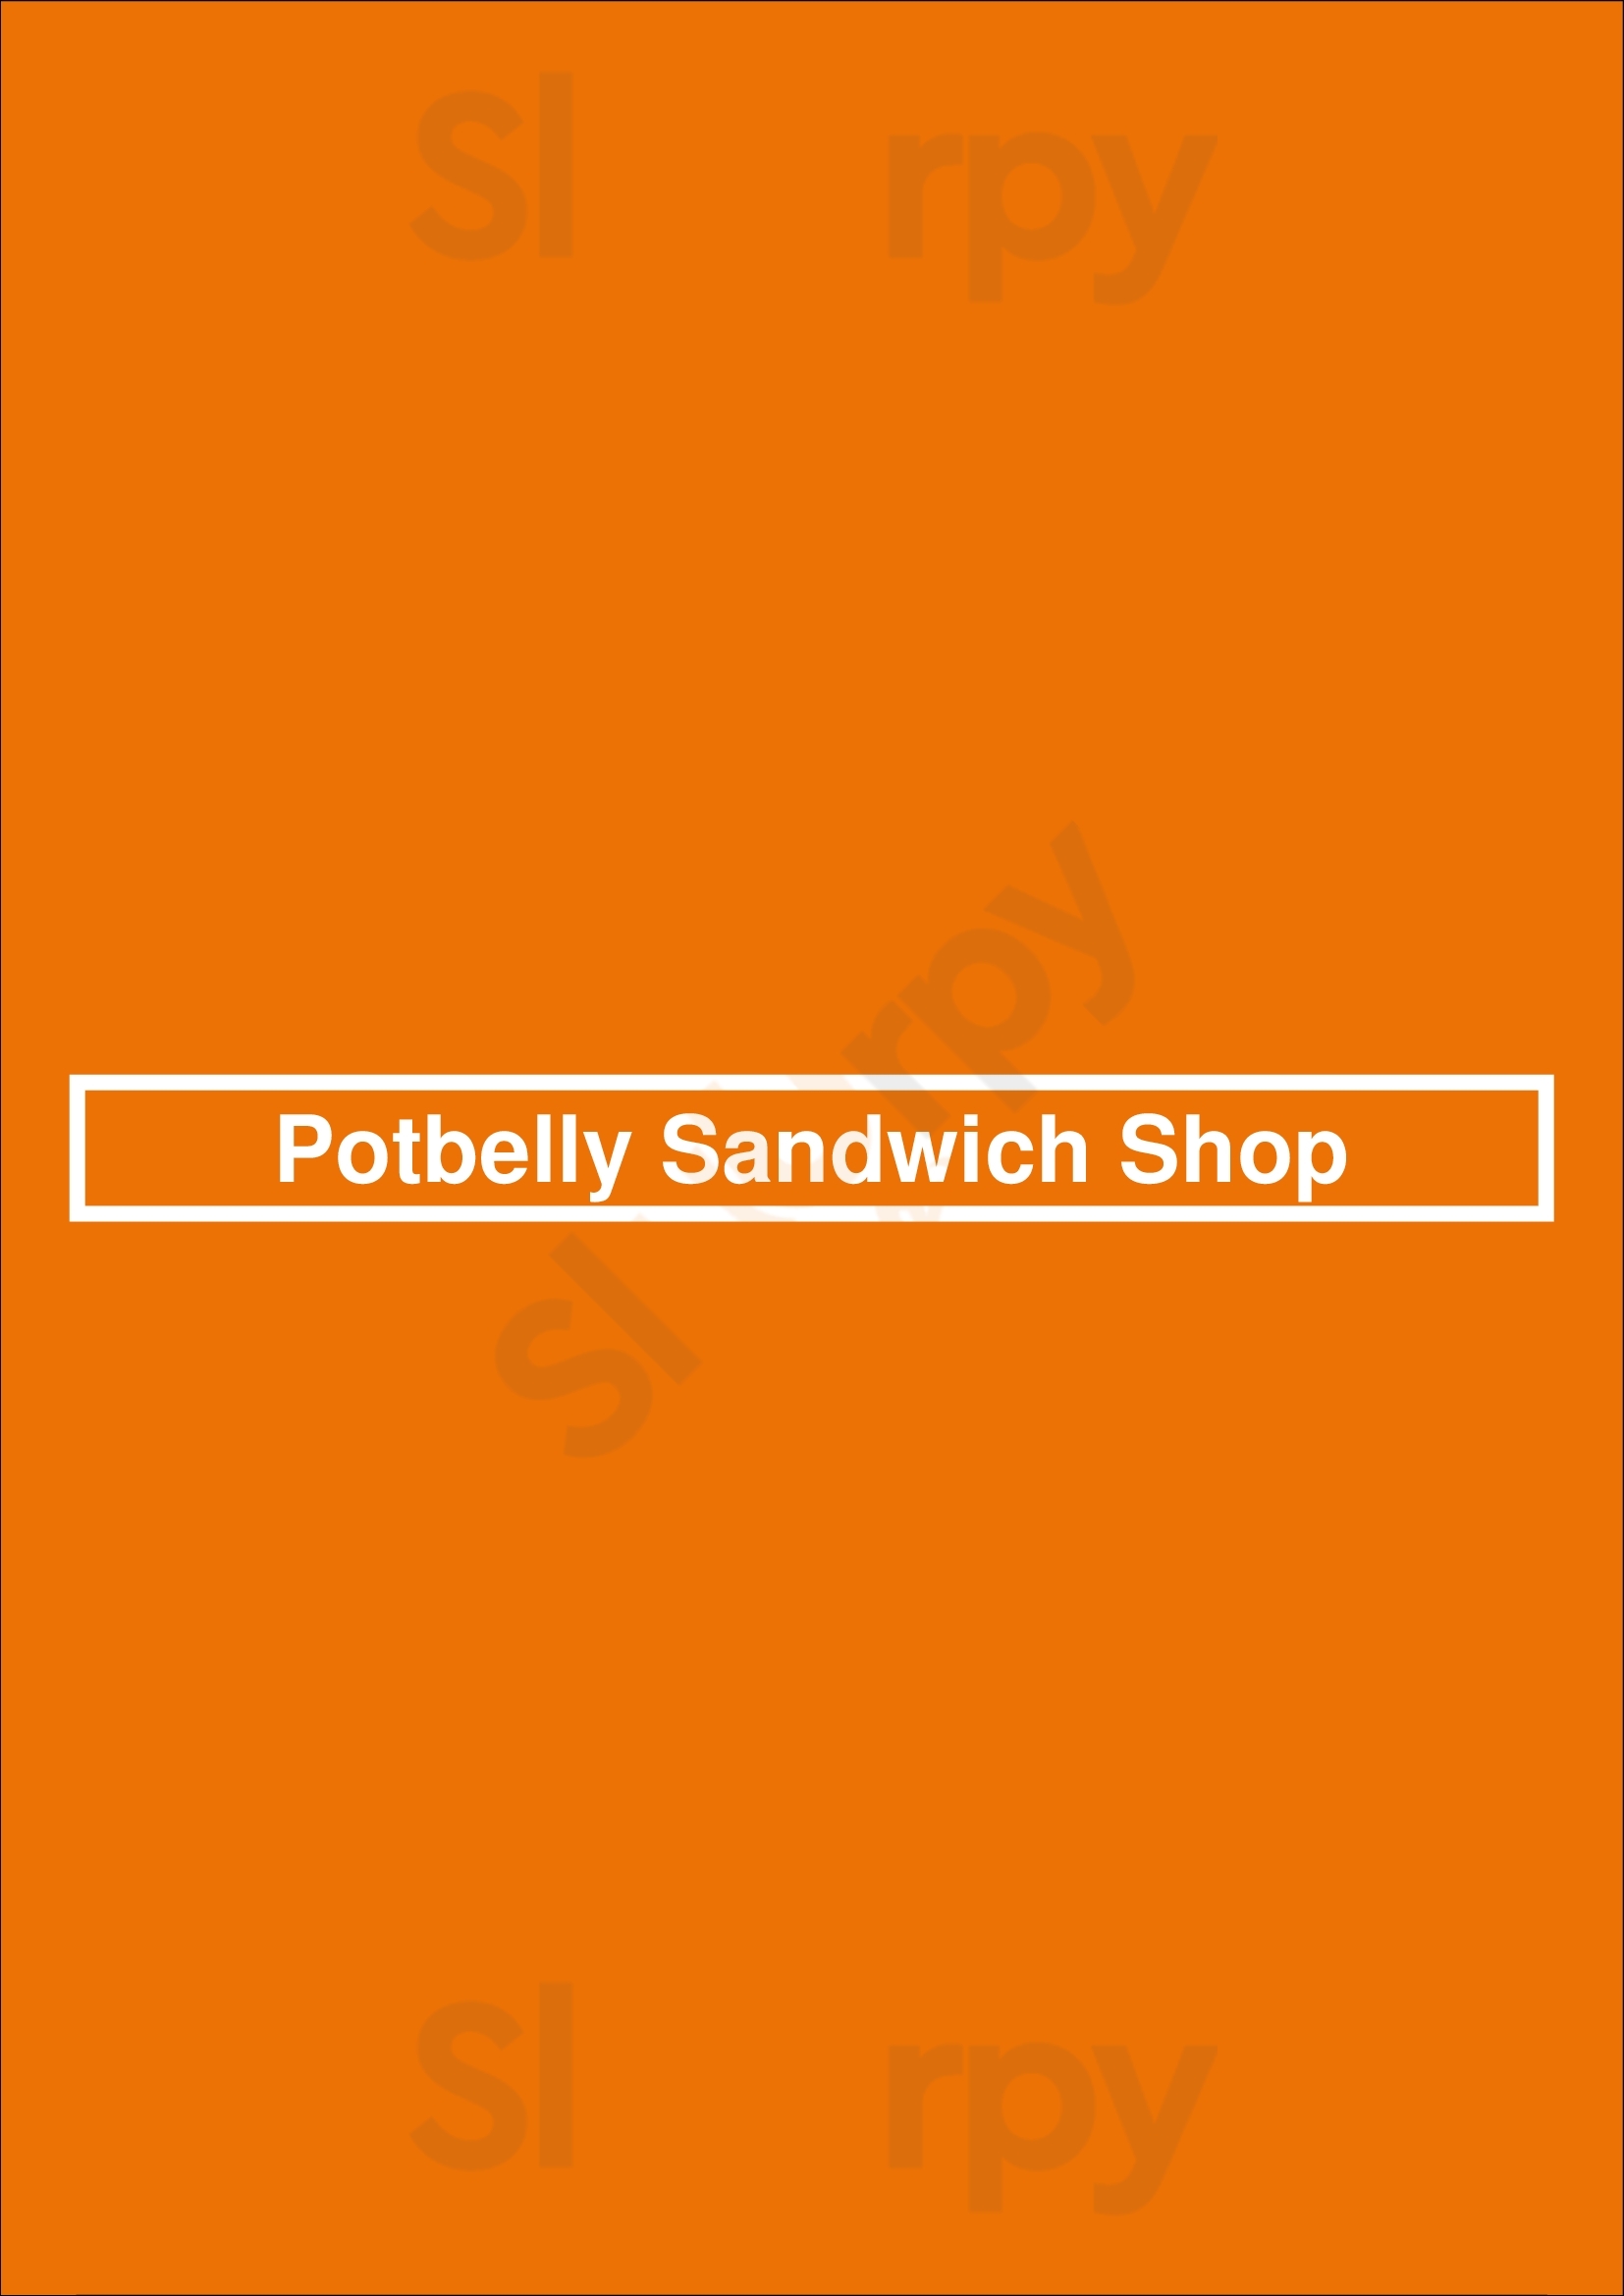 Potbelly Sandwich Shop Fort Collins Menu - 1